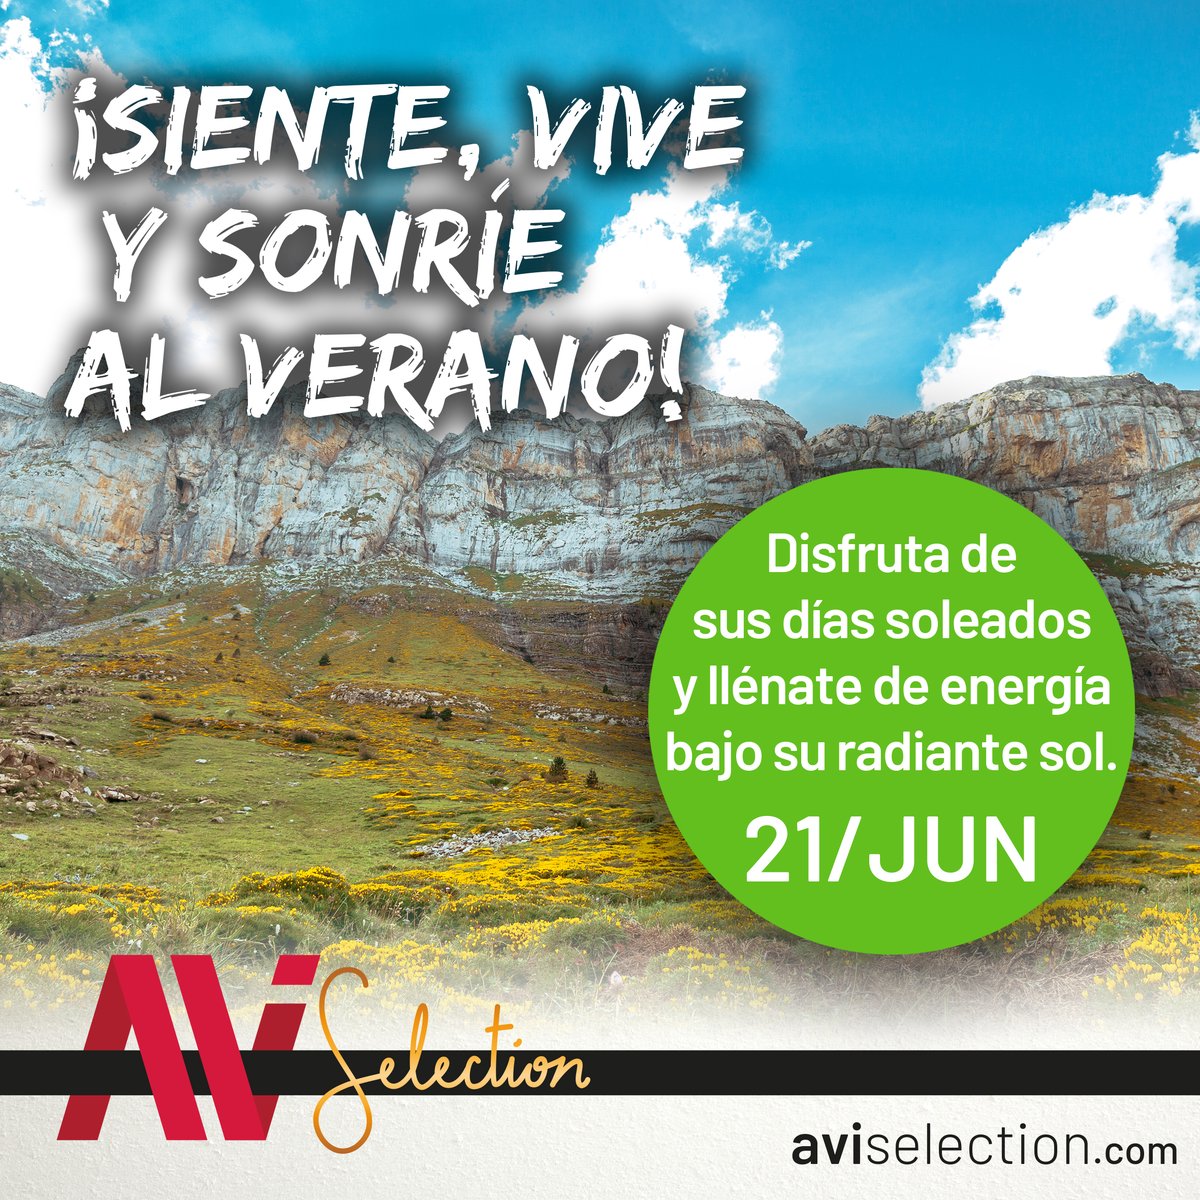 ⛰️ ¡Siente, vive y sonríe al verano!

Disfruta de sus días soleados y llénate de energía bajo su radiante sol ☀️

#AviSelection #Huesca #descubreHuesca #ProductosdelPirineo #TurismoHuesca